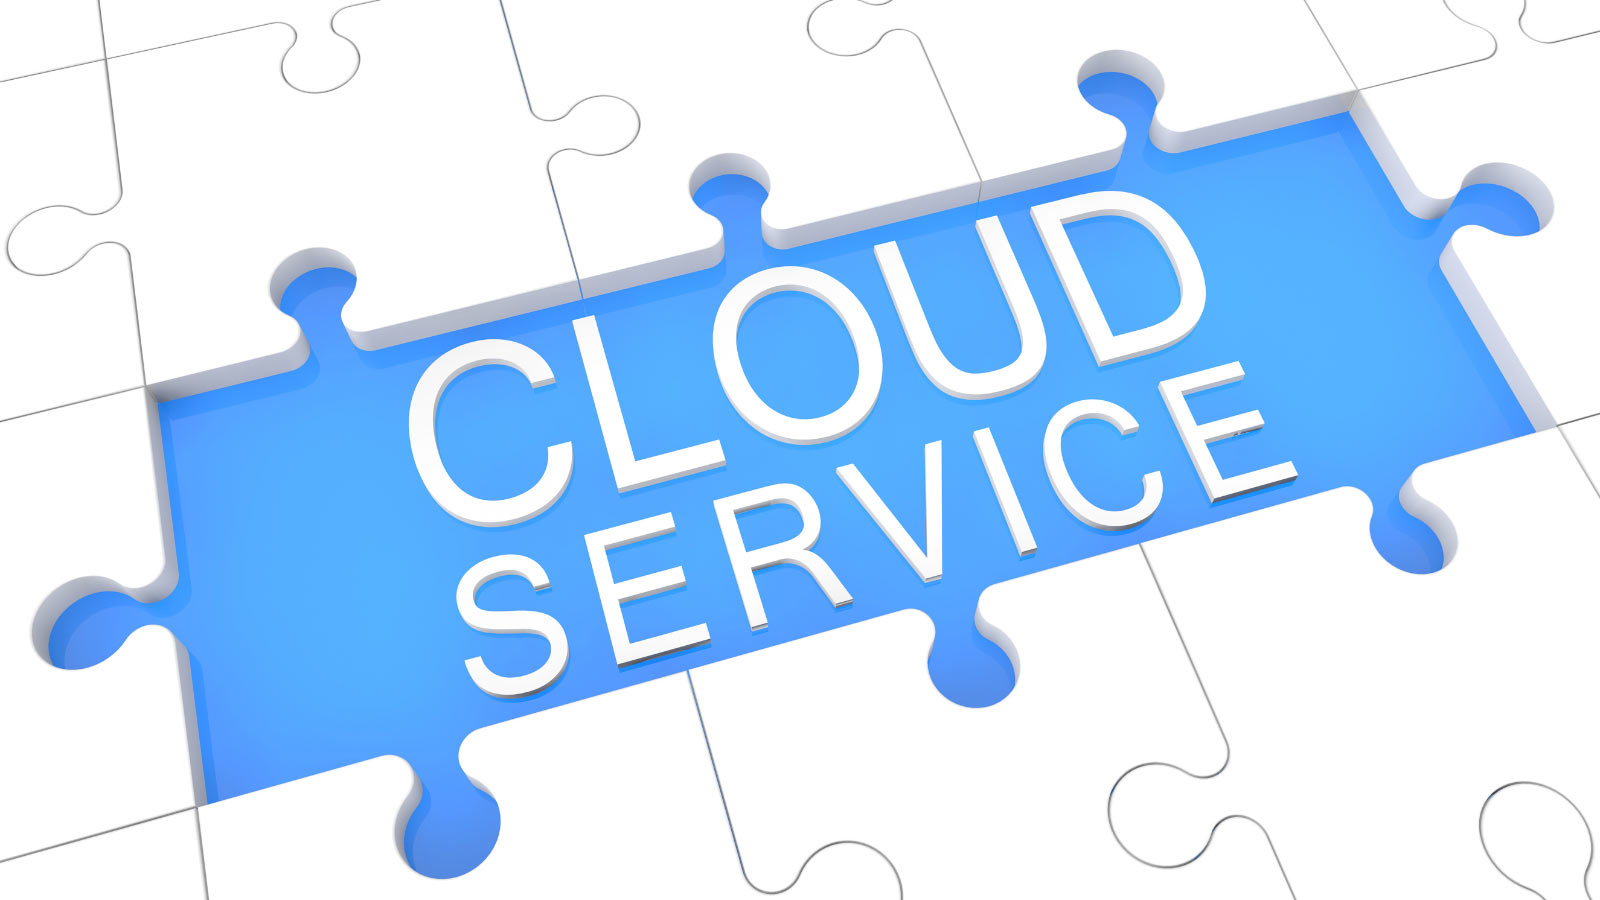 service-cloud